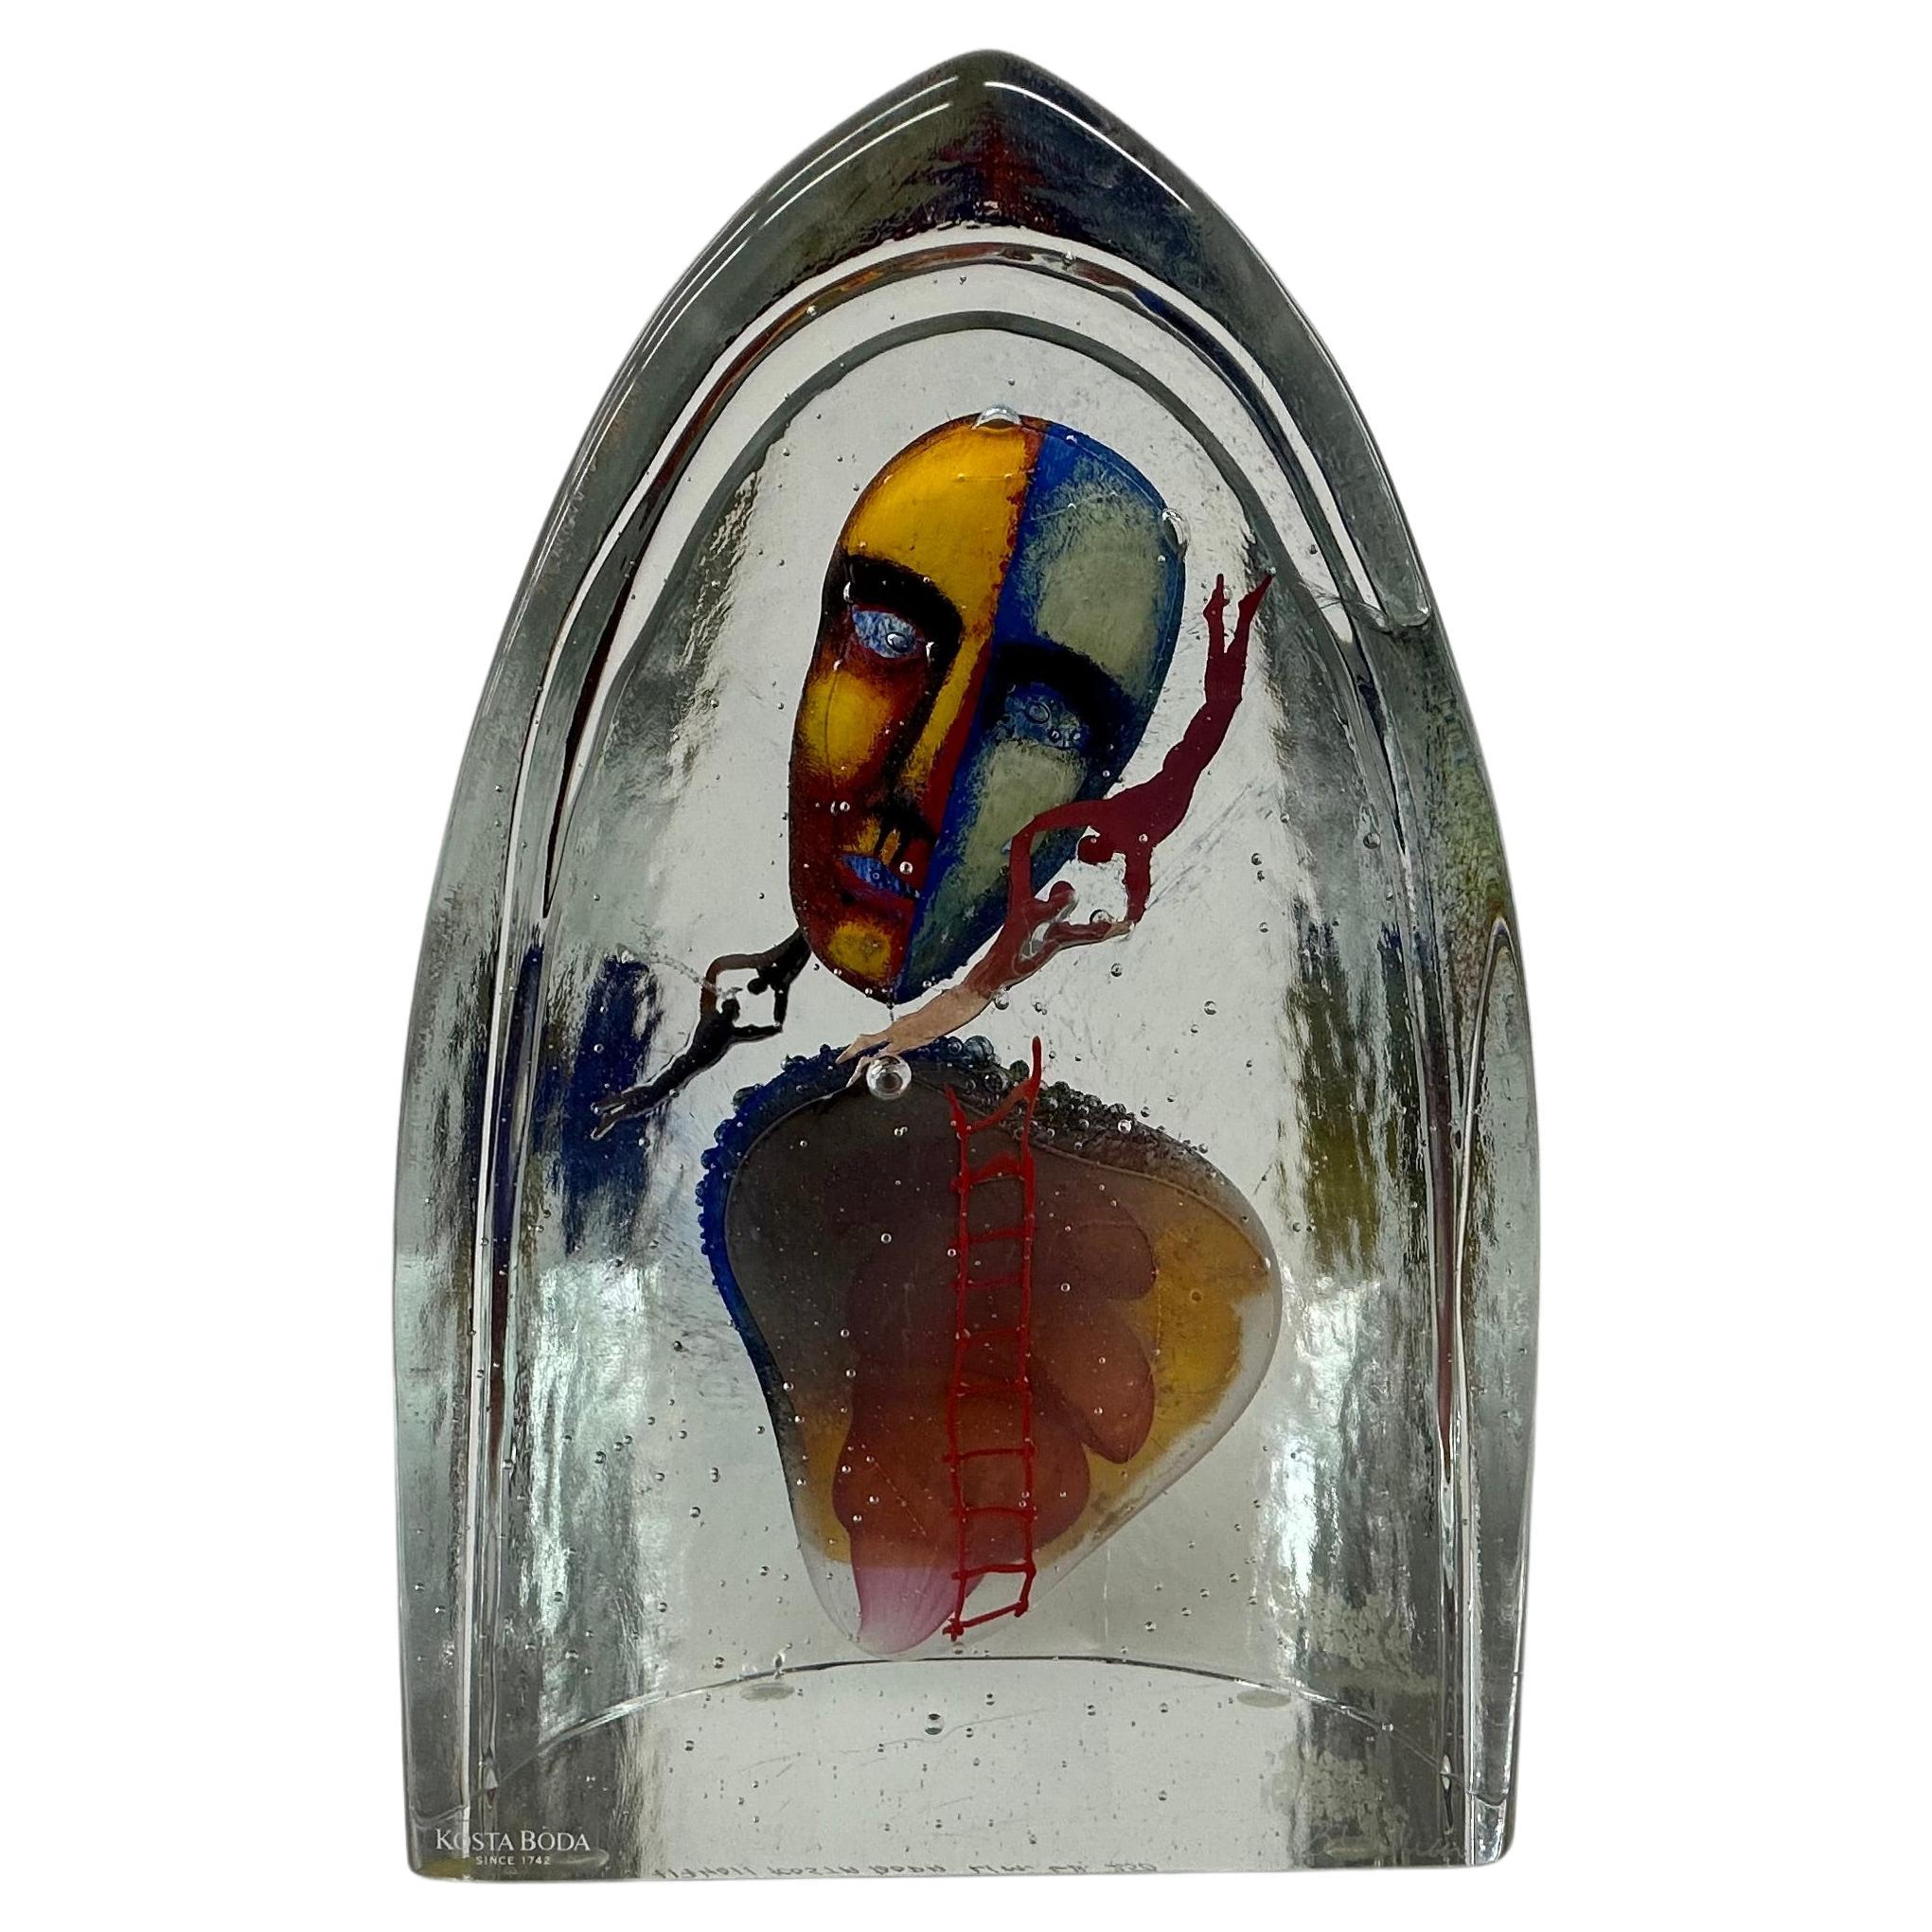 Bertil Vallien for Kosta Boda Glas ‘Together’ Sculpture Limited edition